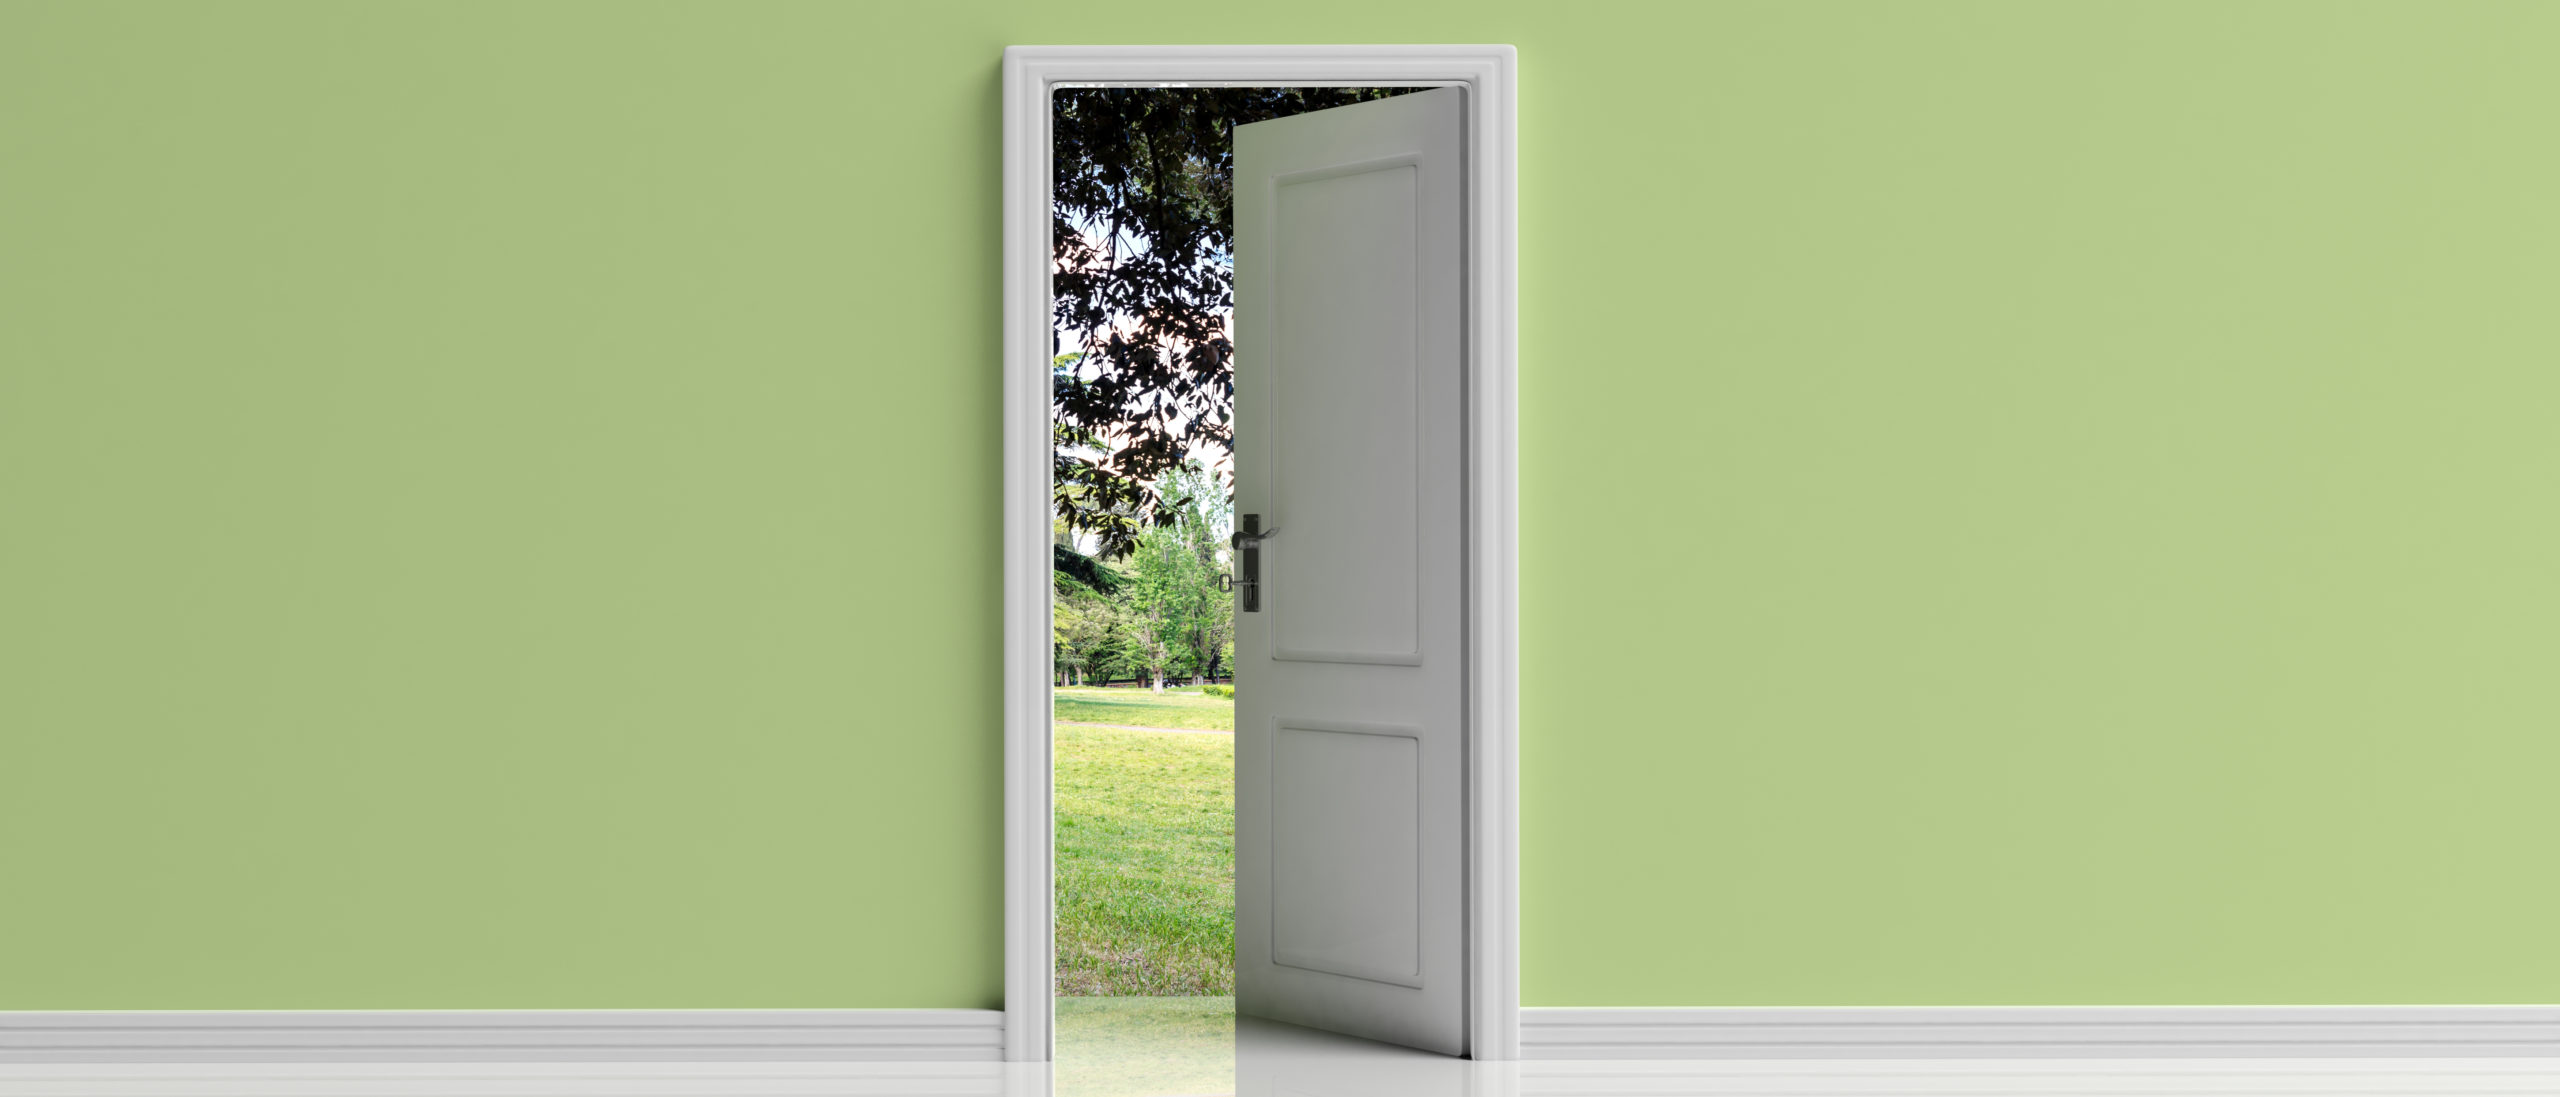 Otwarte drzwi, przejście do natury, nadzieja. Otwarte drzwi na tle zielonej pastelowej ściany, neway, neway exclusive doors,